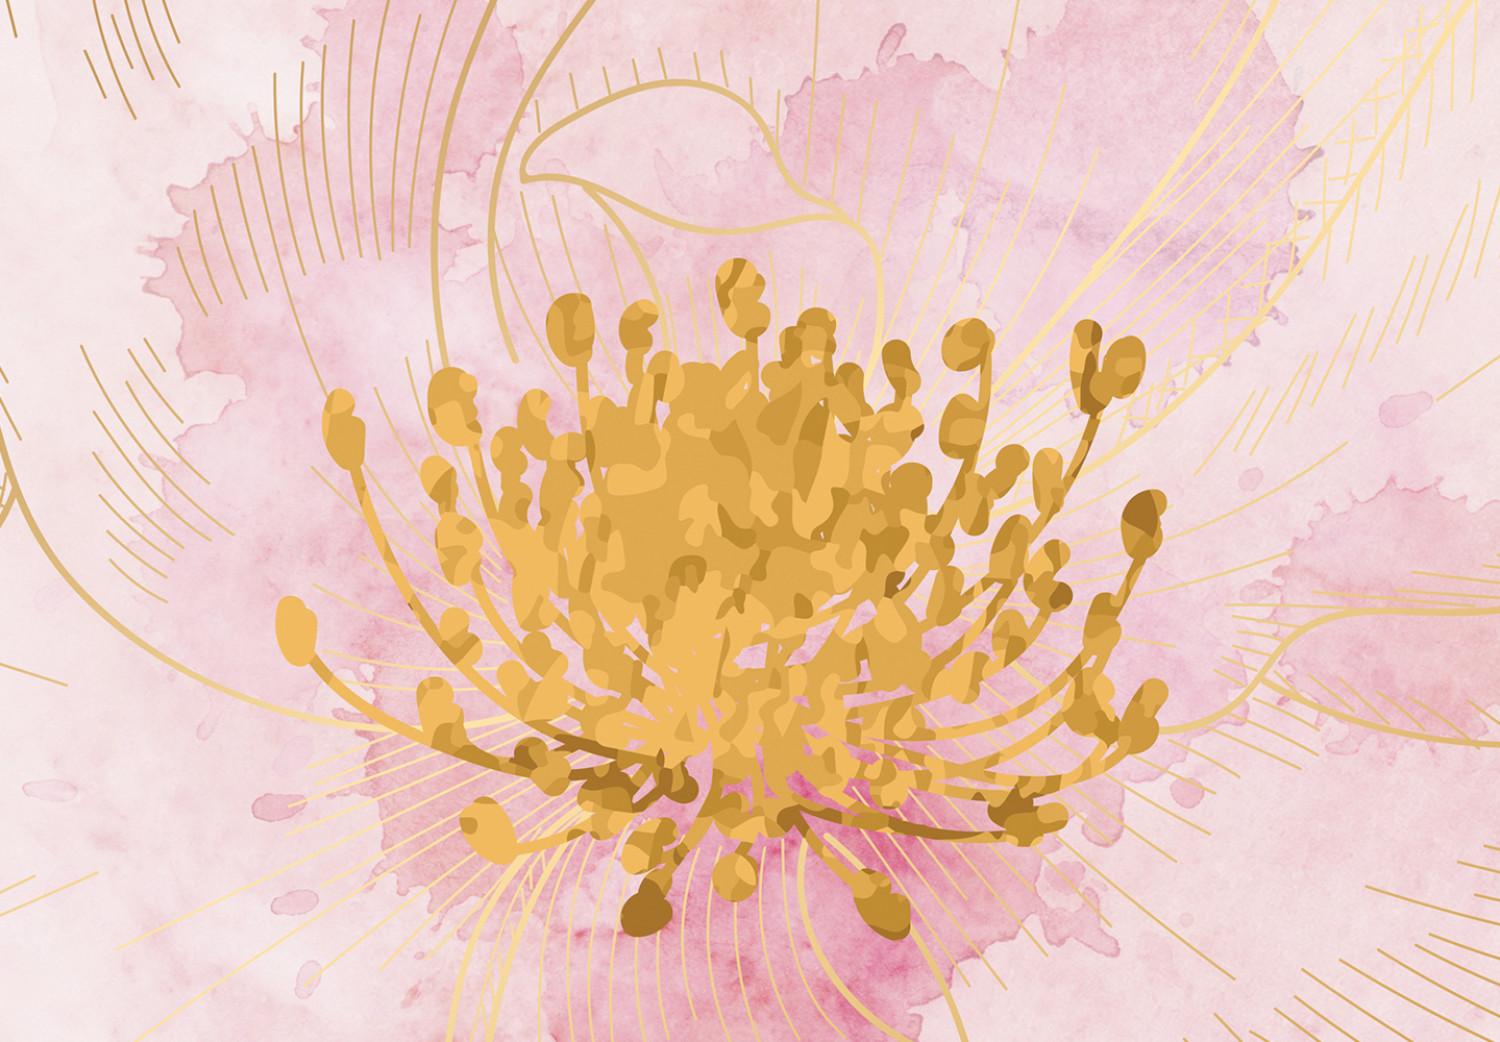 Cuadro Blossom - abstracción con tres flores sobre un fondo rosa borrado